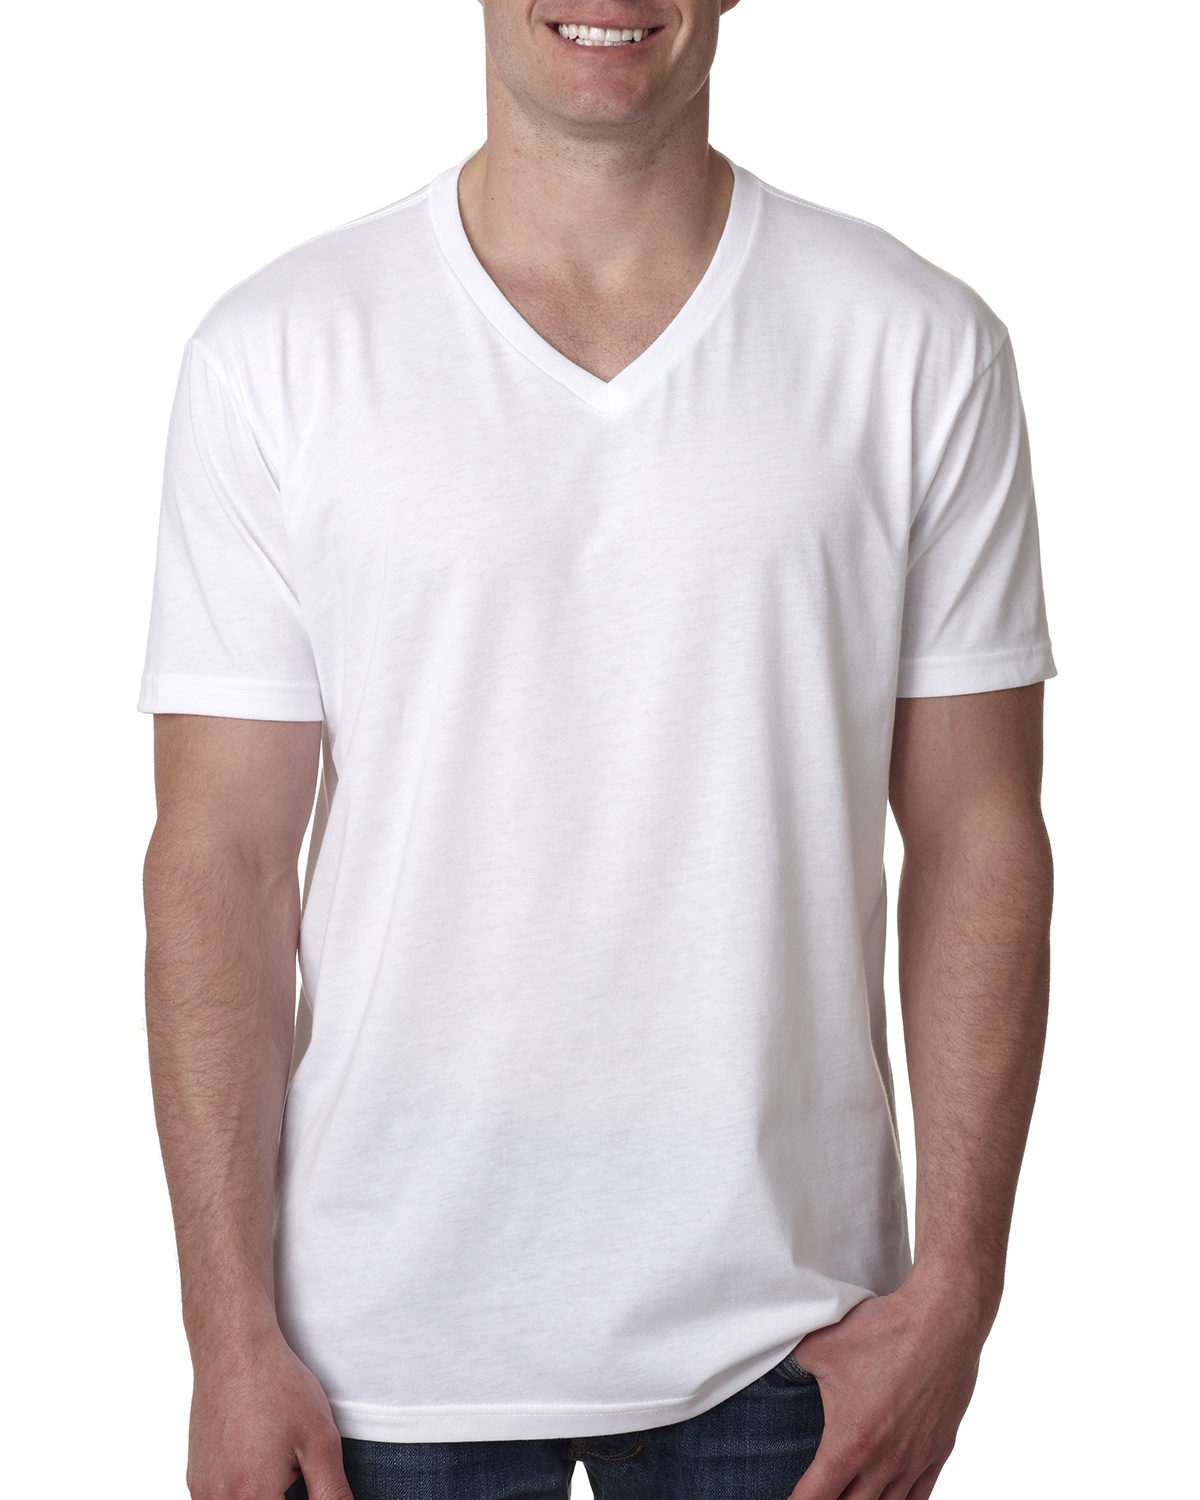 Купить мужскую футболку v вырезом. V Neck Levis t Shirt. Футболка с треугольным вырезом мужская. Белая футболка мужская. Футболка с v образным вырезом мужская.